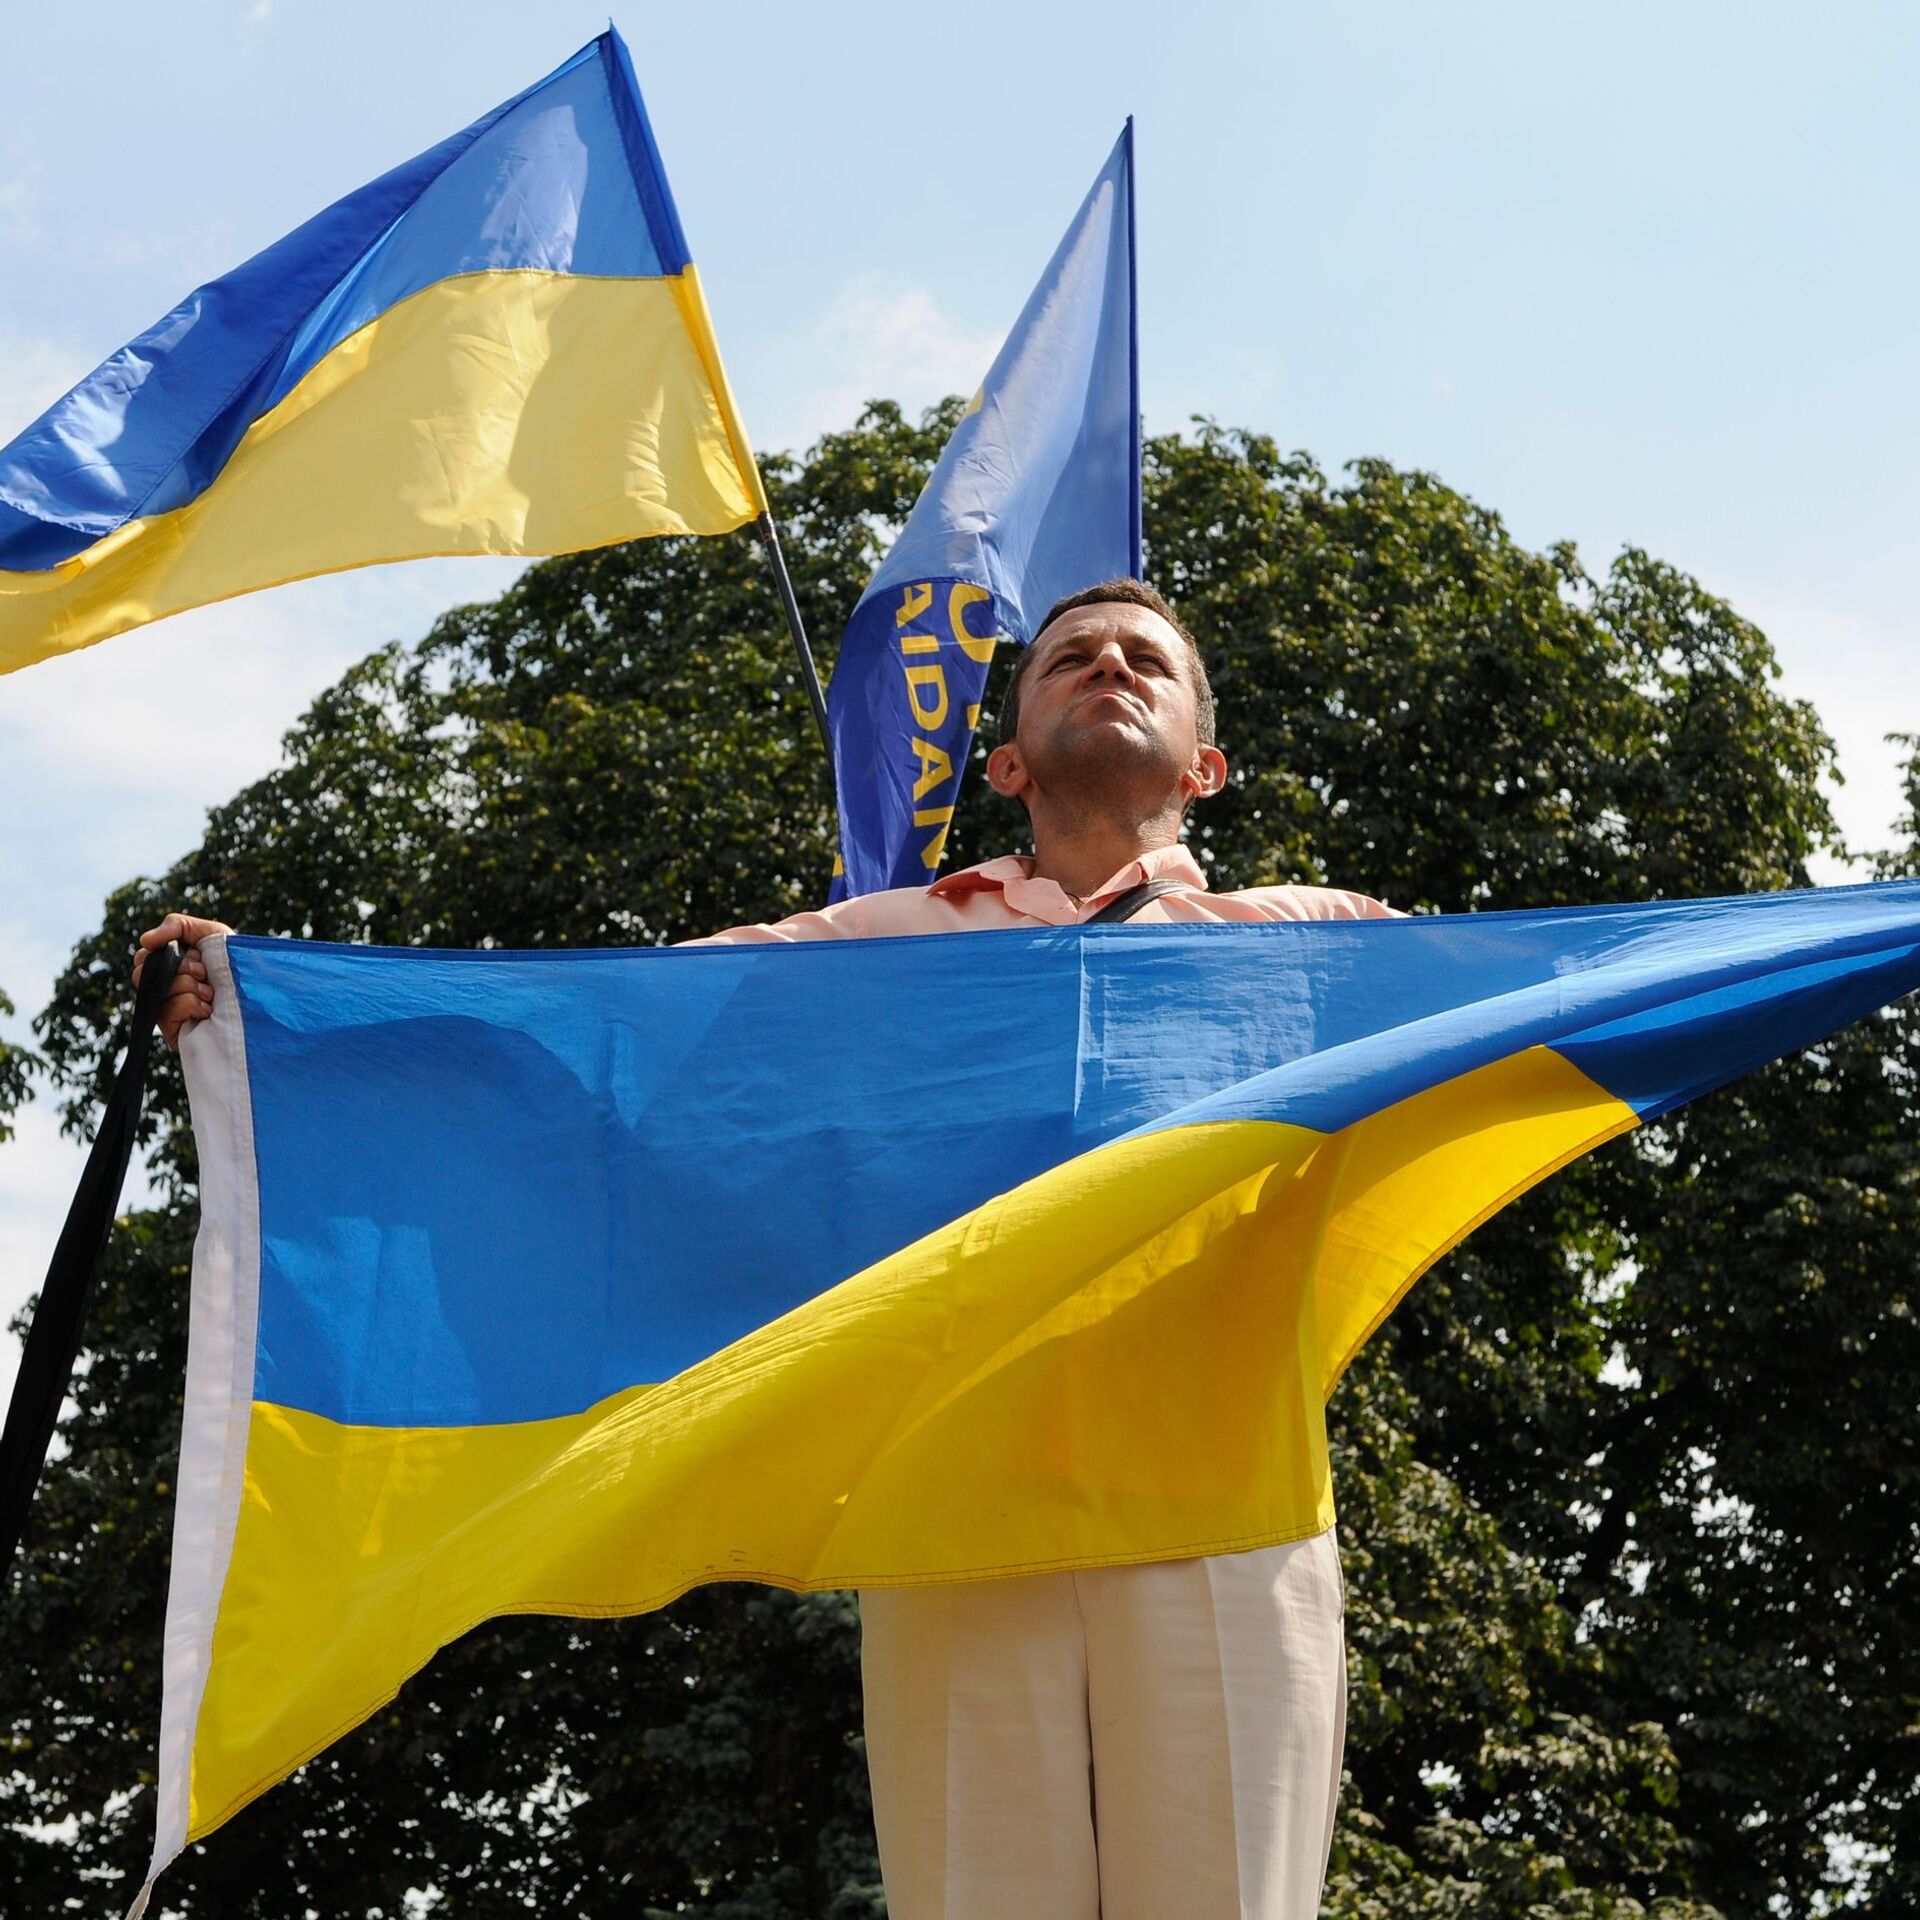 Биография украинца. Украинцы с флагом. Парень с флагом Украины. Украинцы в Греции. Украинский флаг в руках.